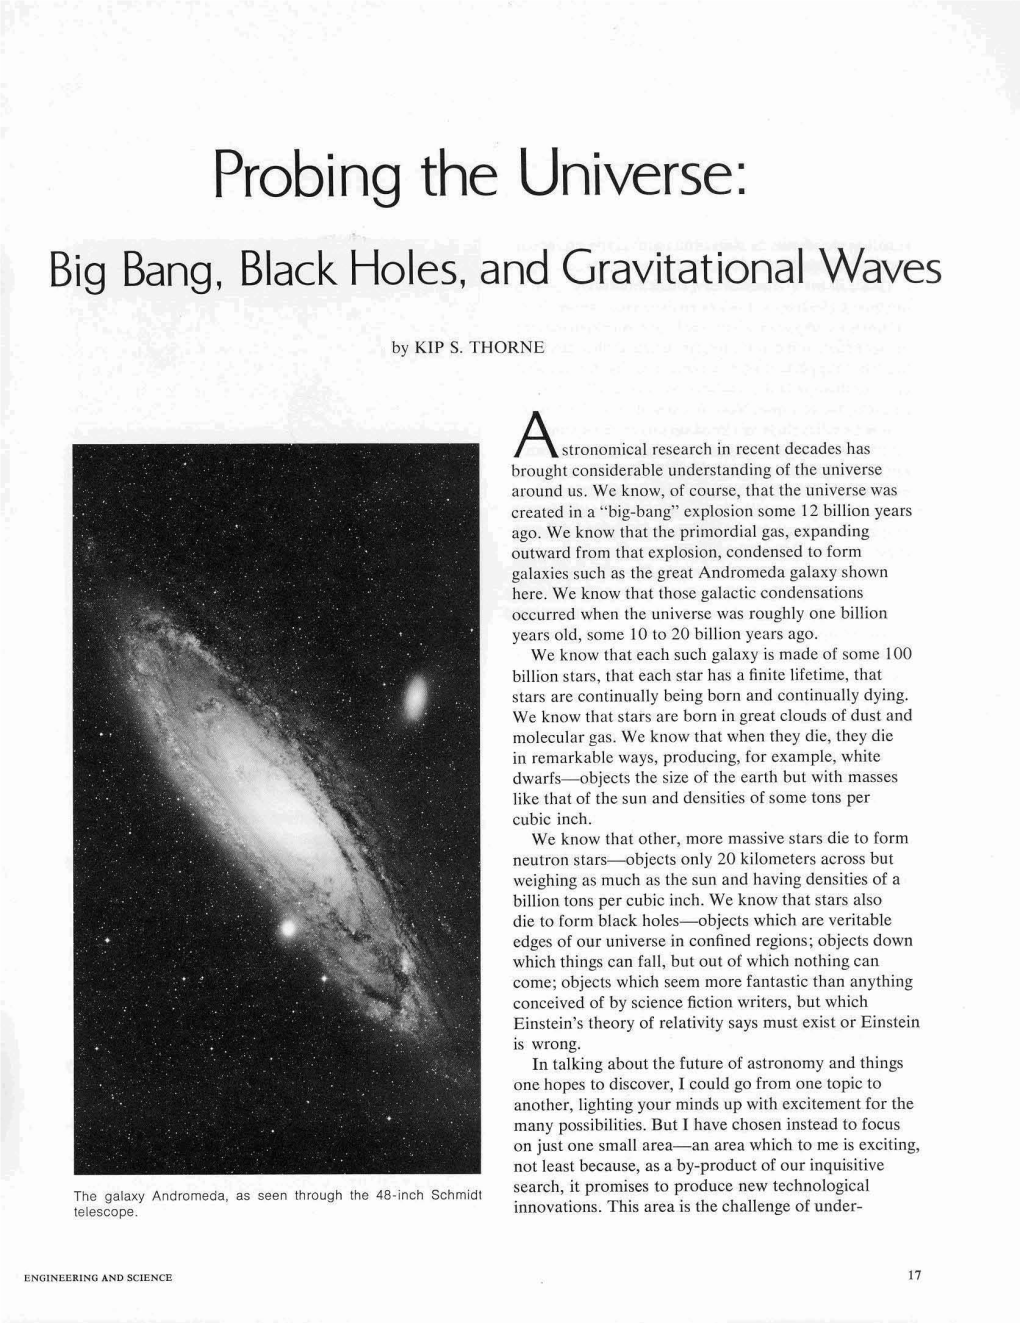 Probing the Universe: Big Bang, Black Holes, and Gravitational Waves